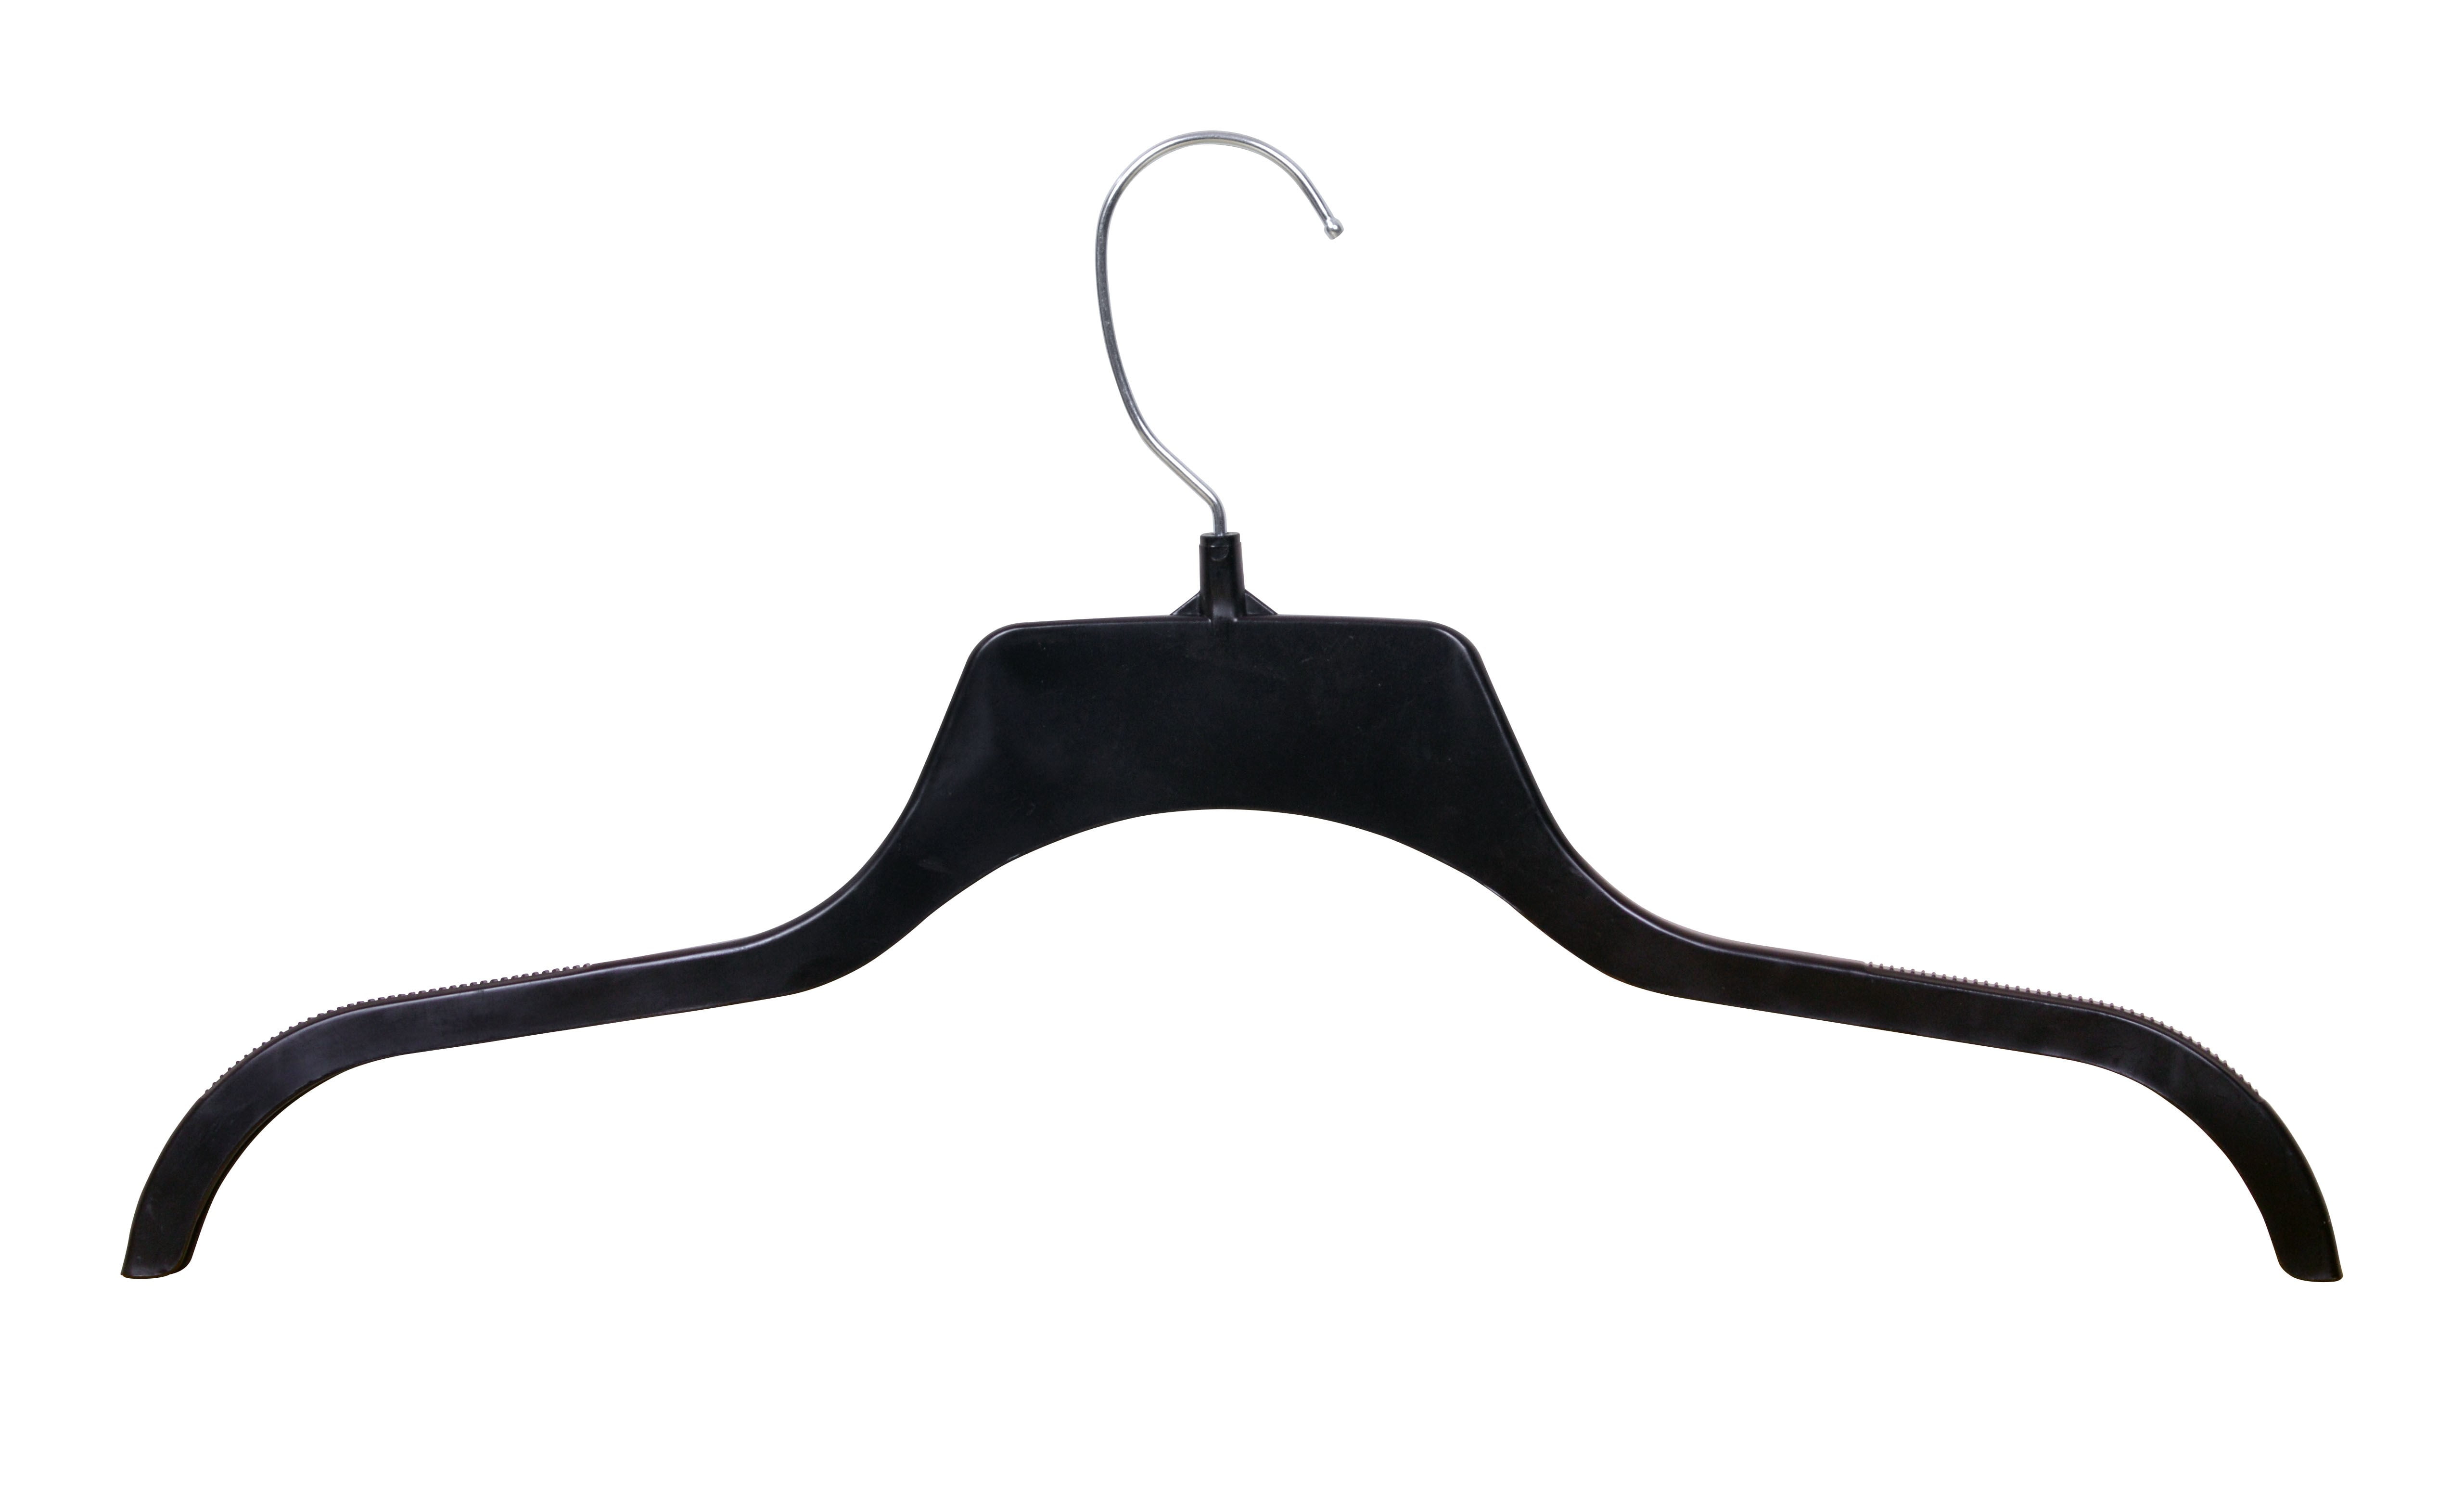 Black Coat Hangers Clothes, Pvc Metal Hangers Clothes